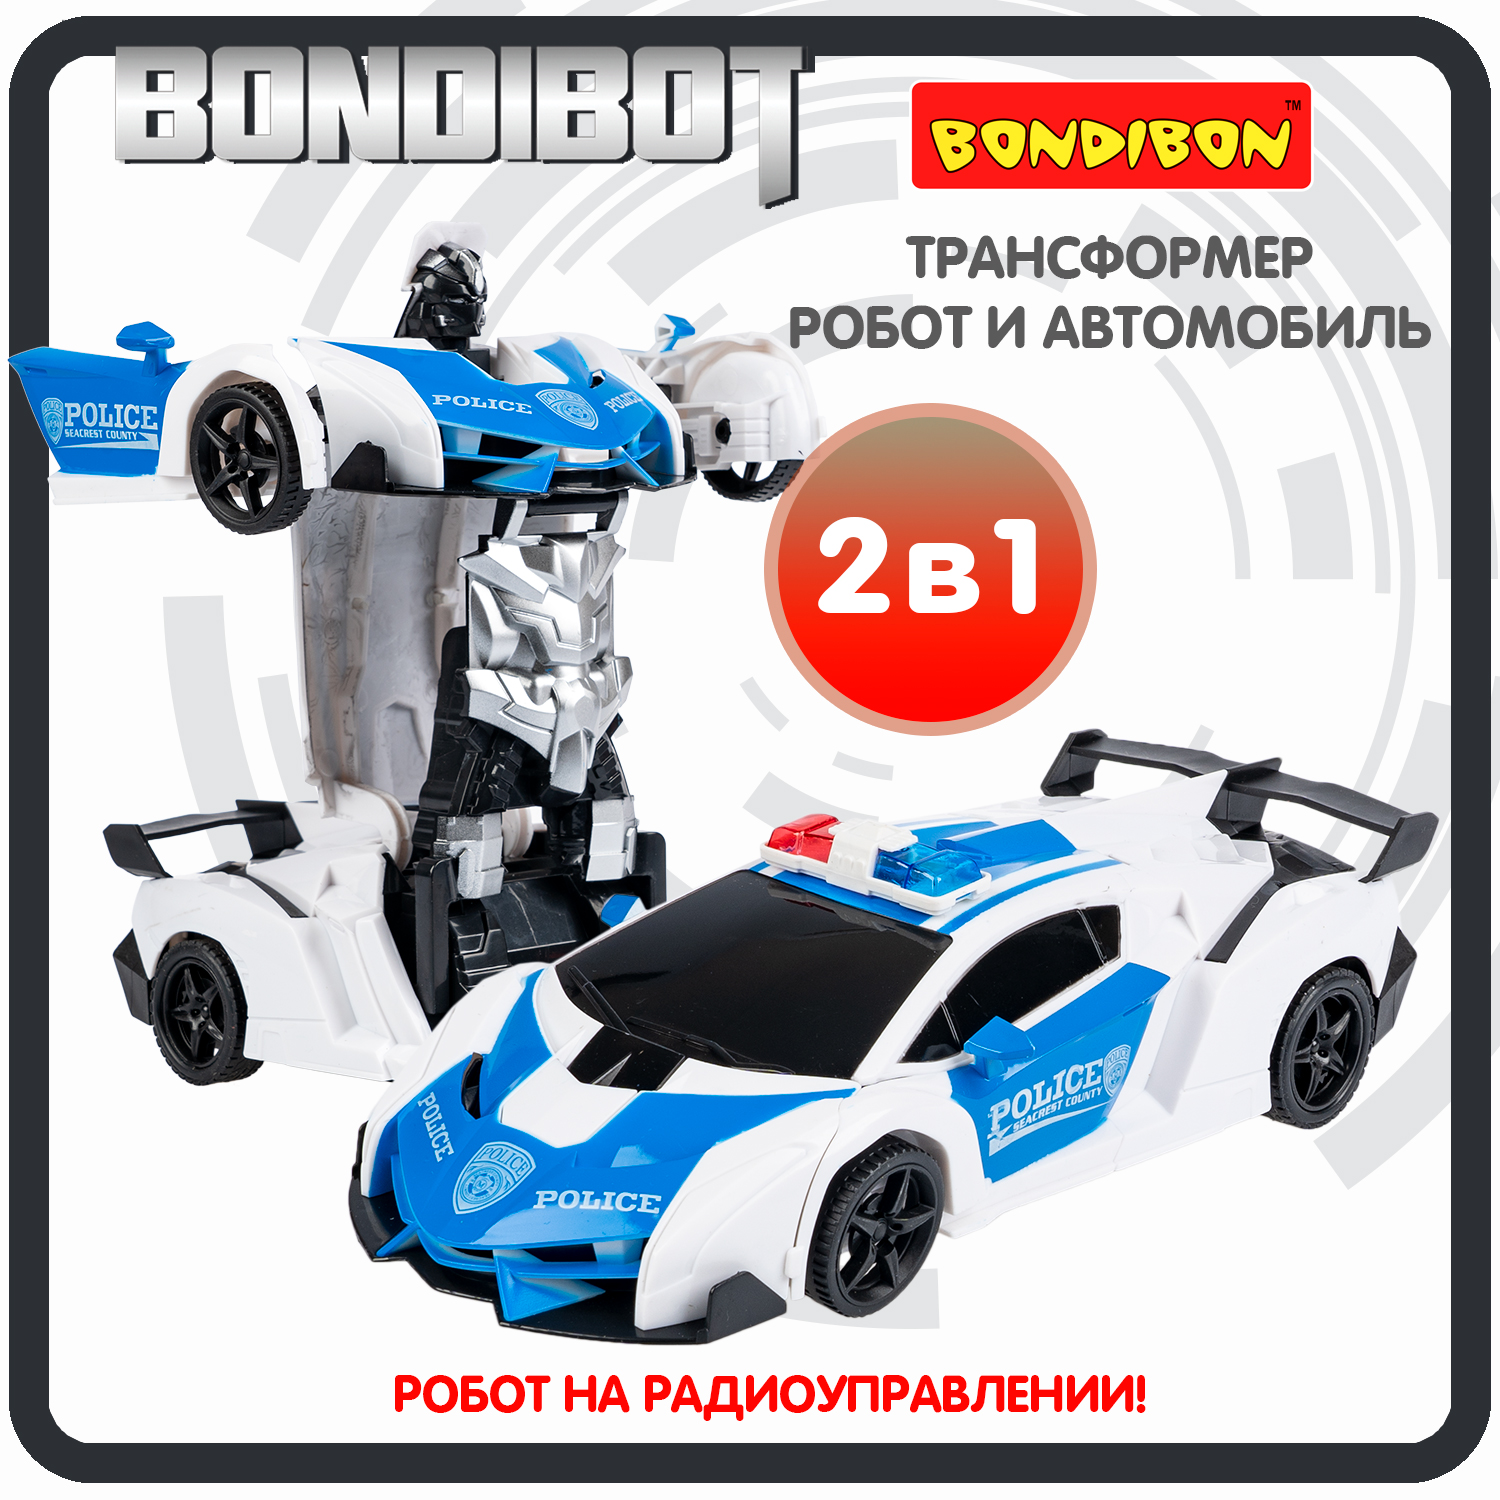 Трансформер 2в1 BONDIBOT на радиоуправлении робот и автомобиль / ВВ6067 трансформер 2в1 bondibot на радиоуправлении робот и автомобиль вв6067